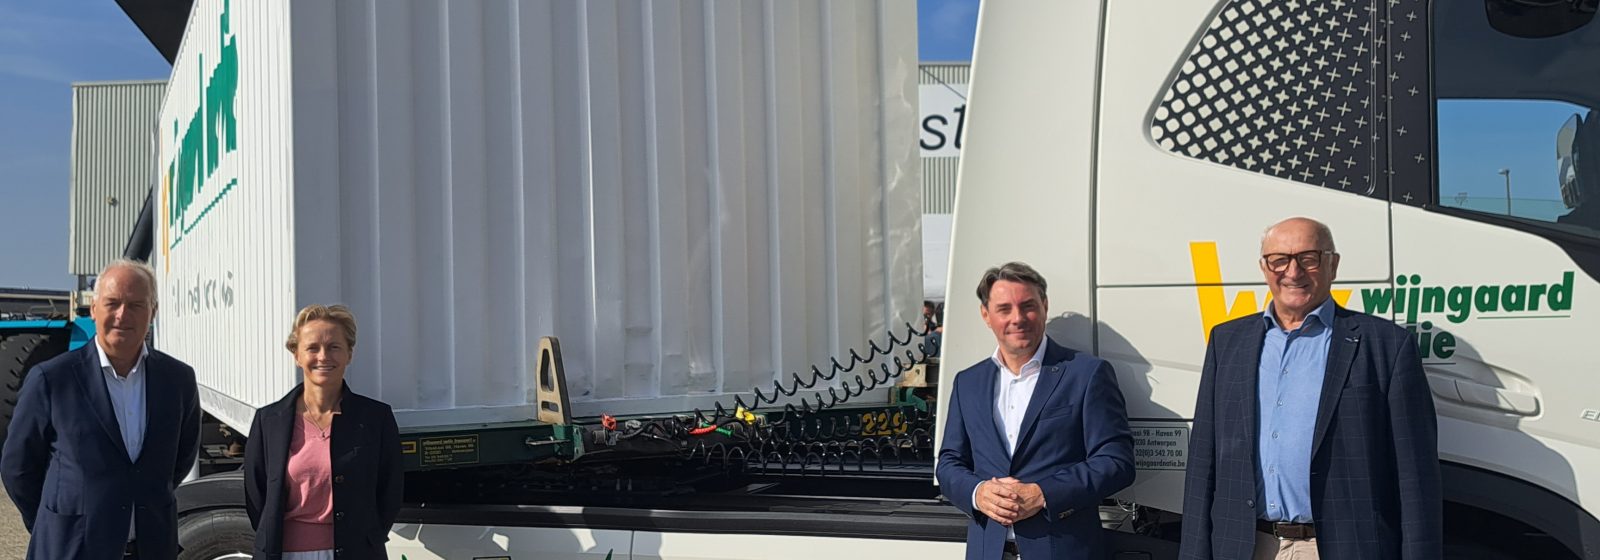 Wijngaard Natie stelt eerste volledig elektrische vrachtwagen van Volvo Trucks in Antwerpse haven voor.